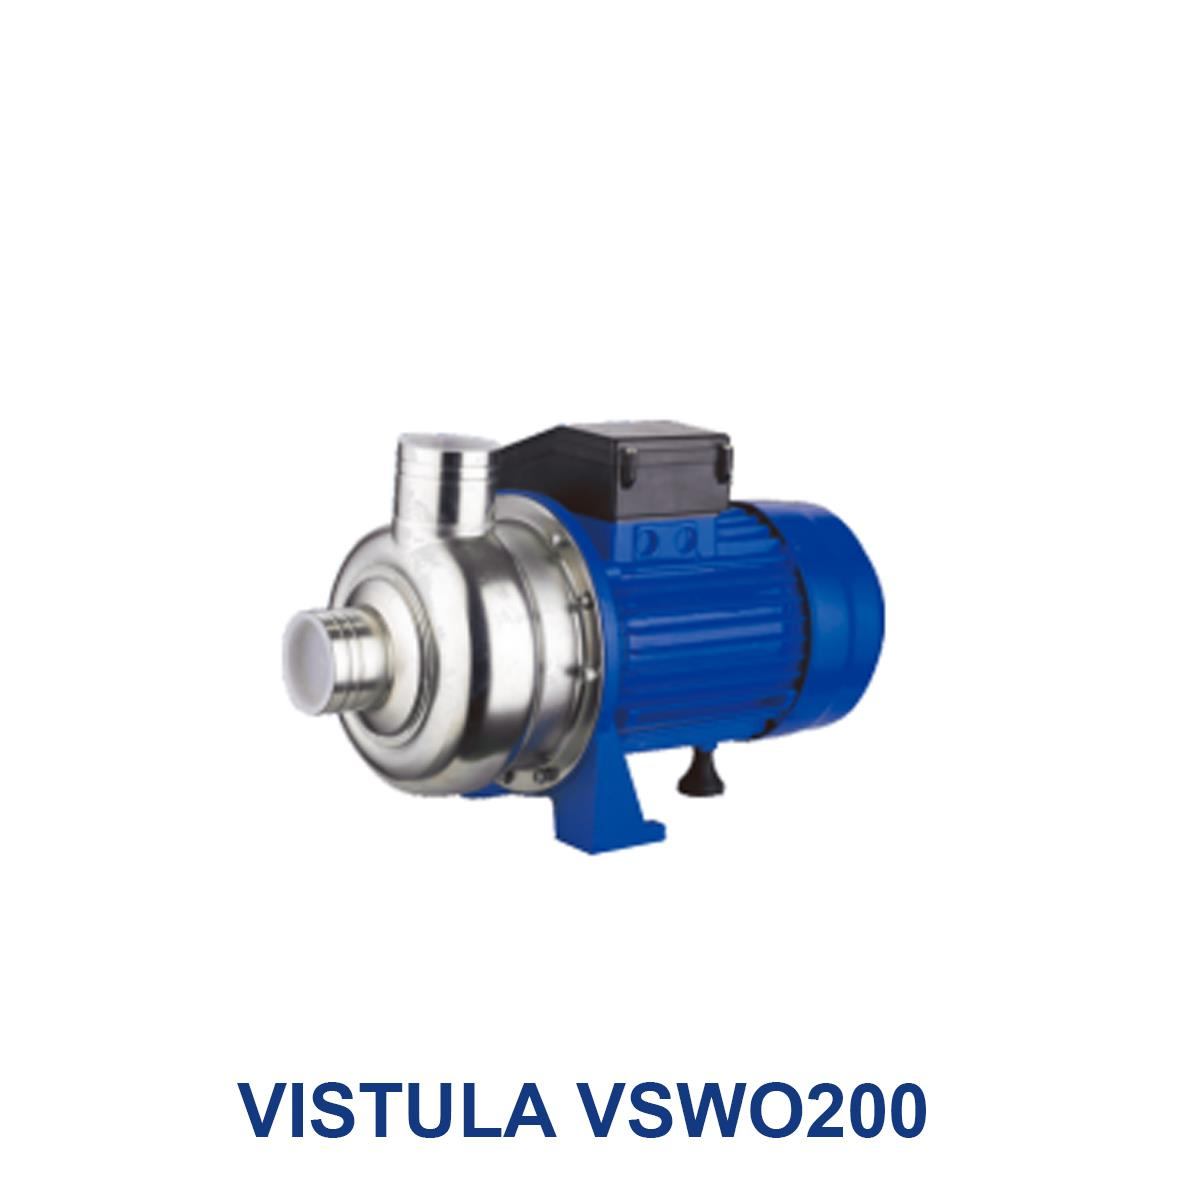 VISTULA-VSWO200